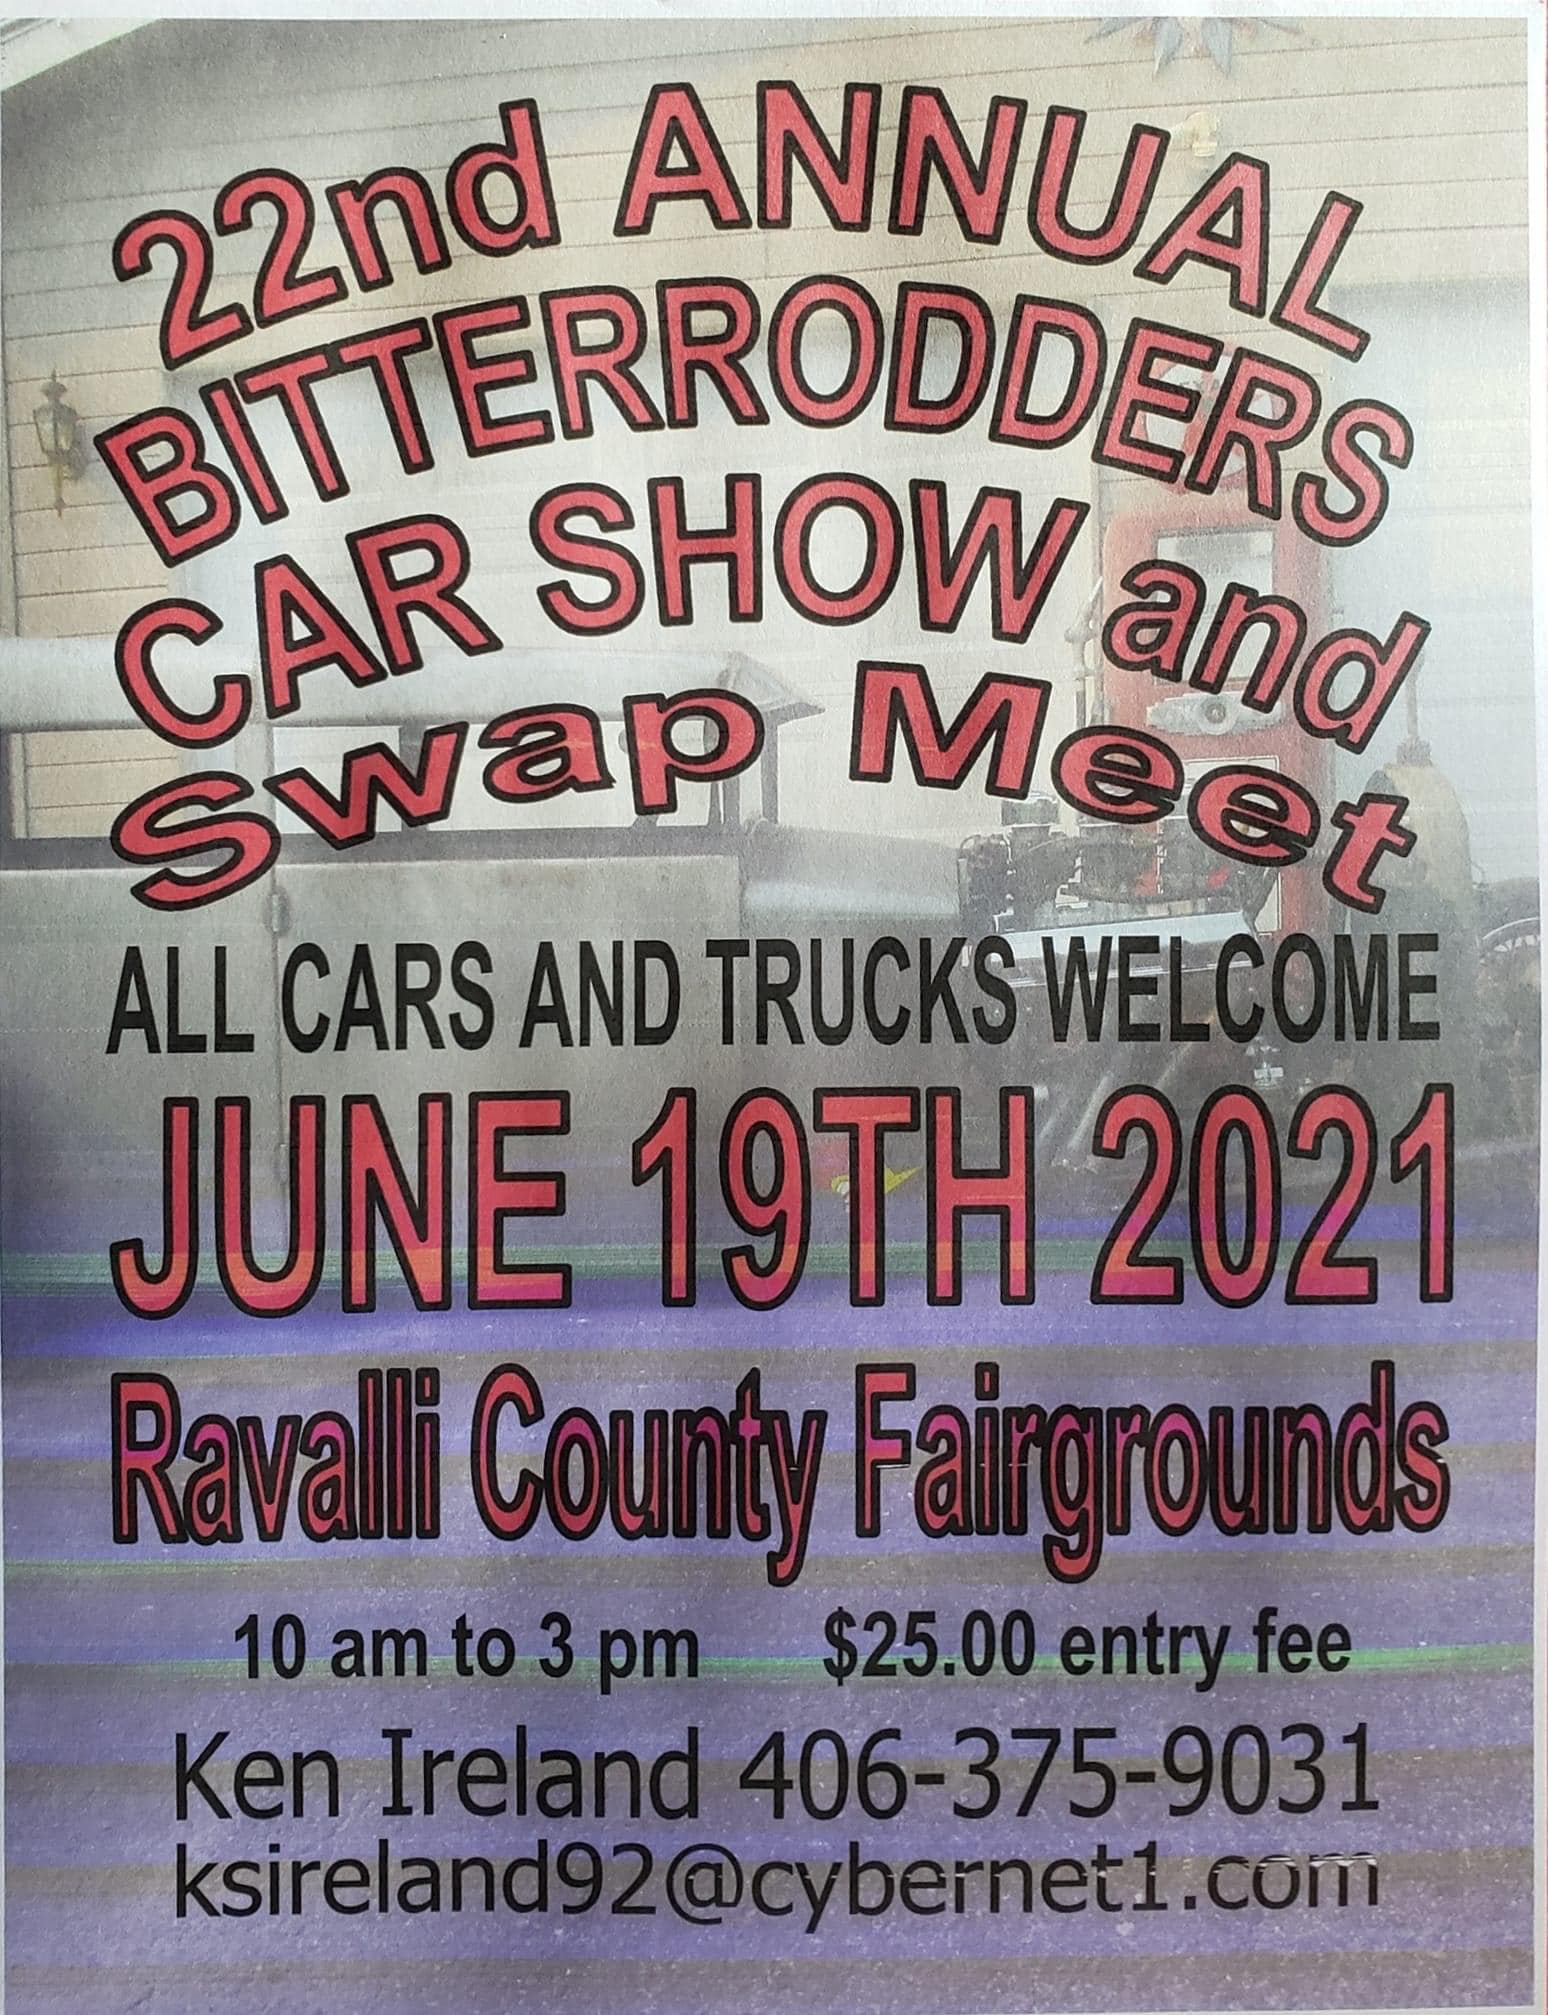 22nd Annual Bitterrodders Car Show and Swap Meet - June 19, 2021